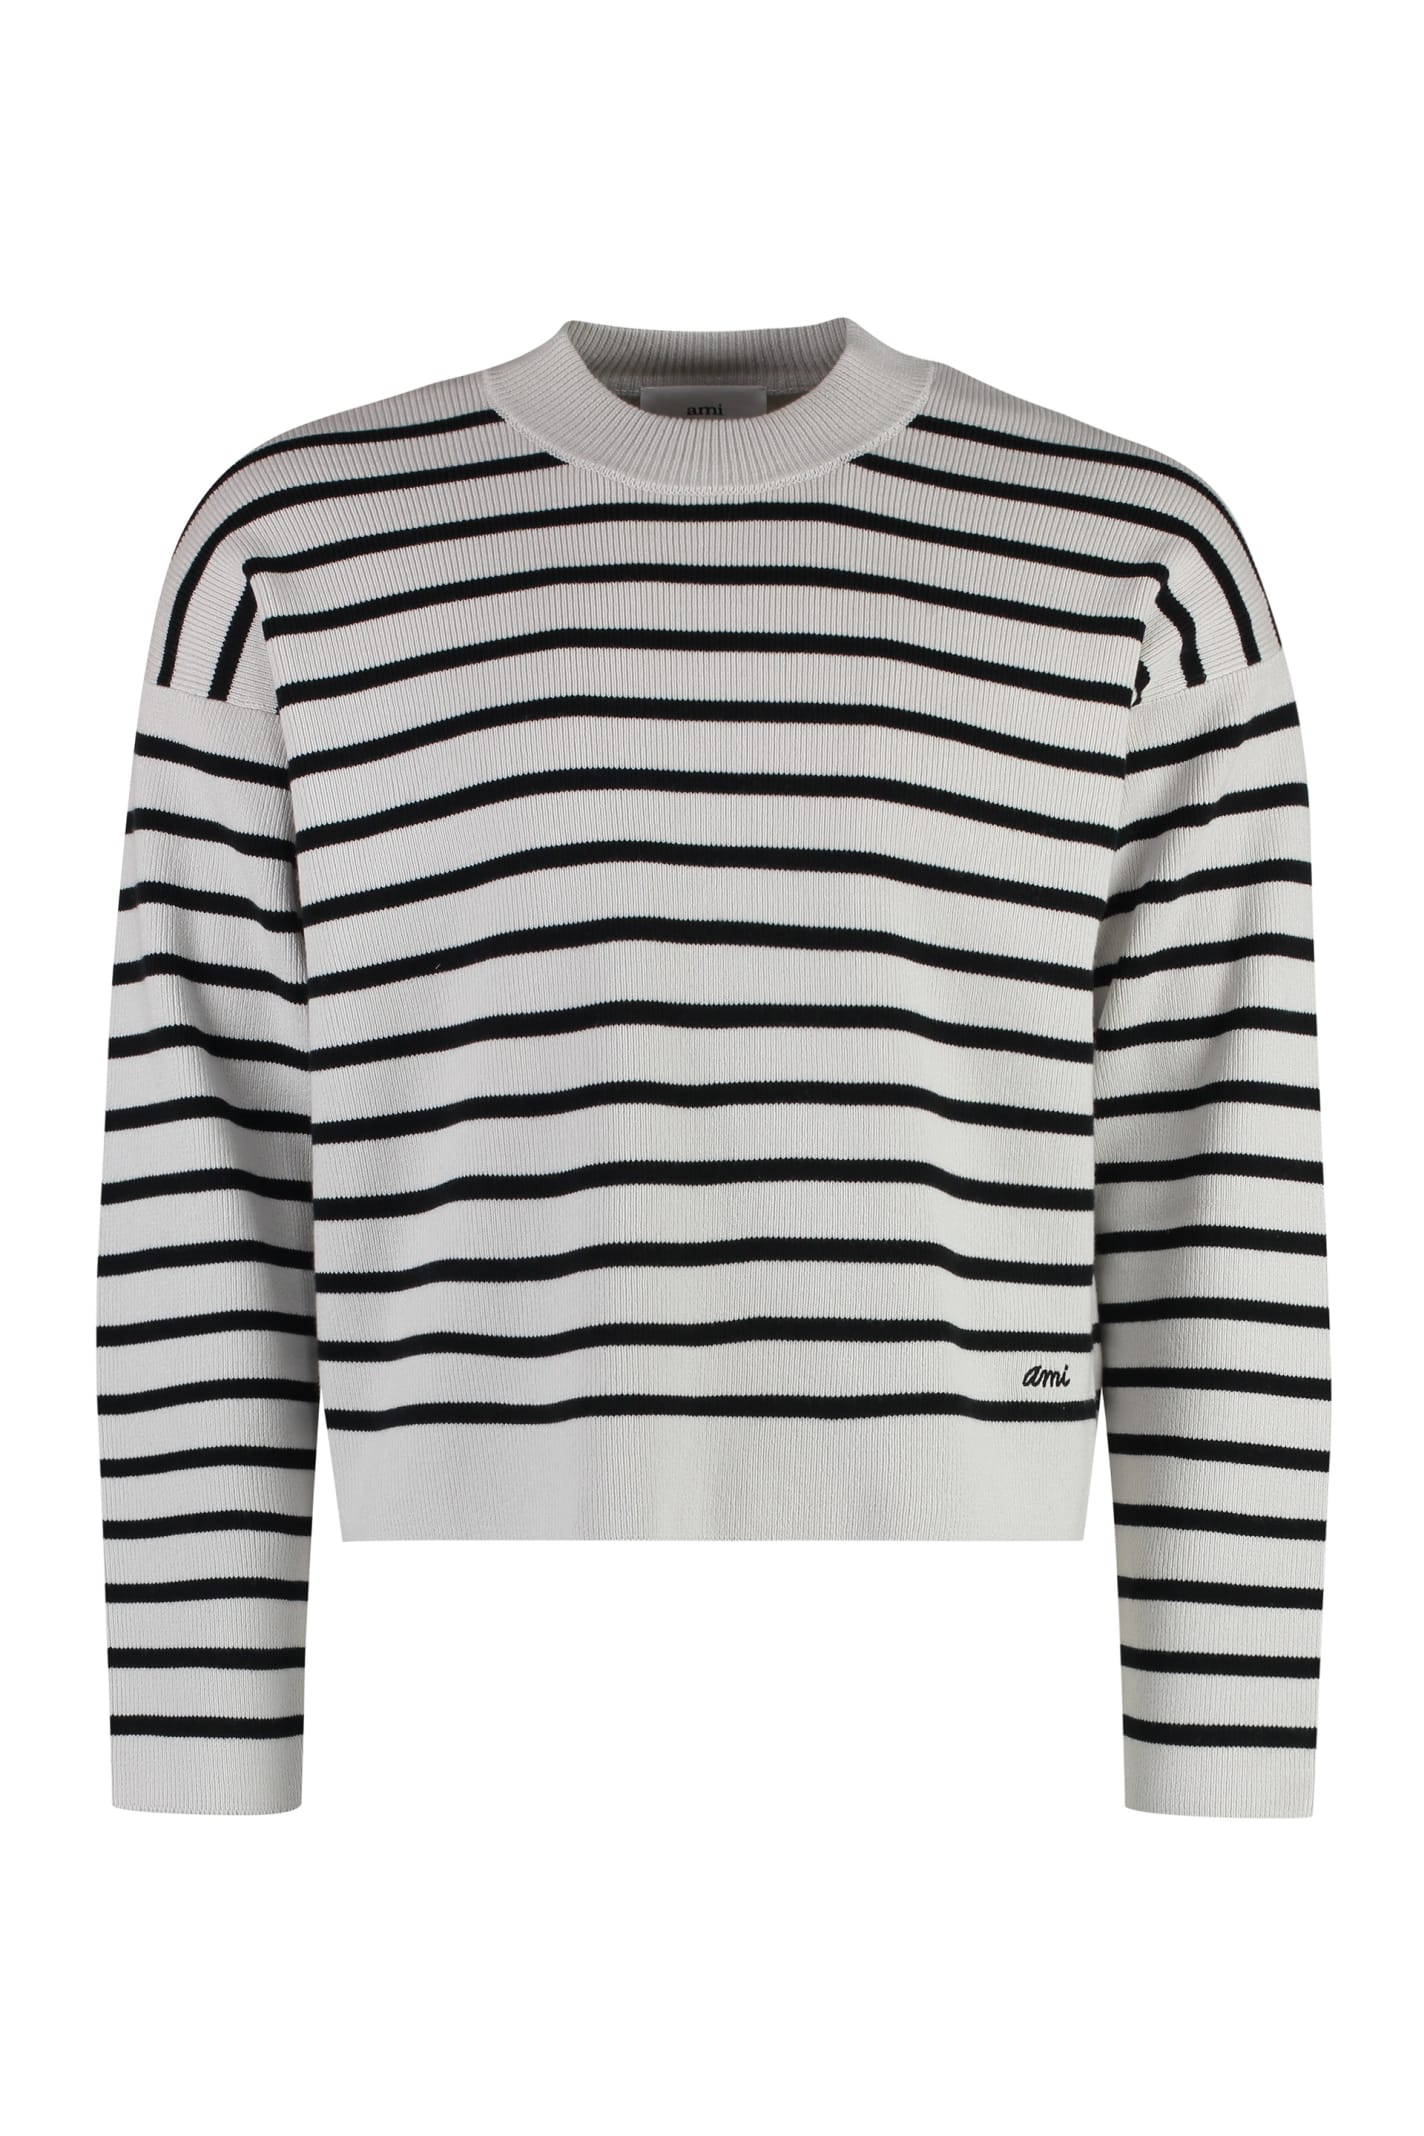 Shop Ami Alexandre Mattiussi Striped Crew-neck Sweater In Grey